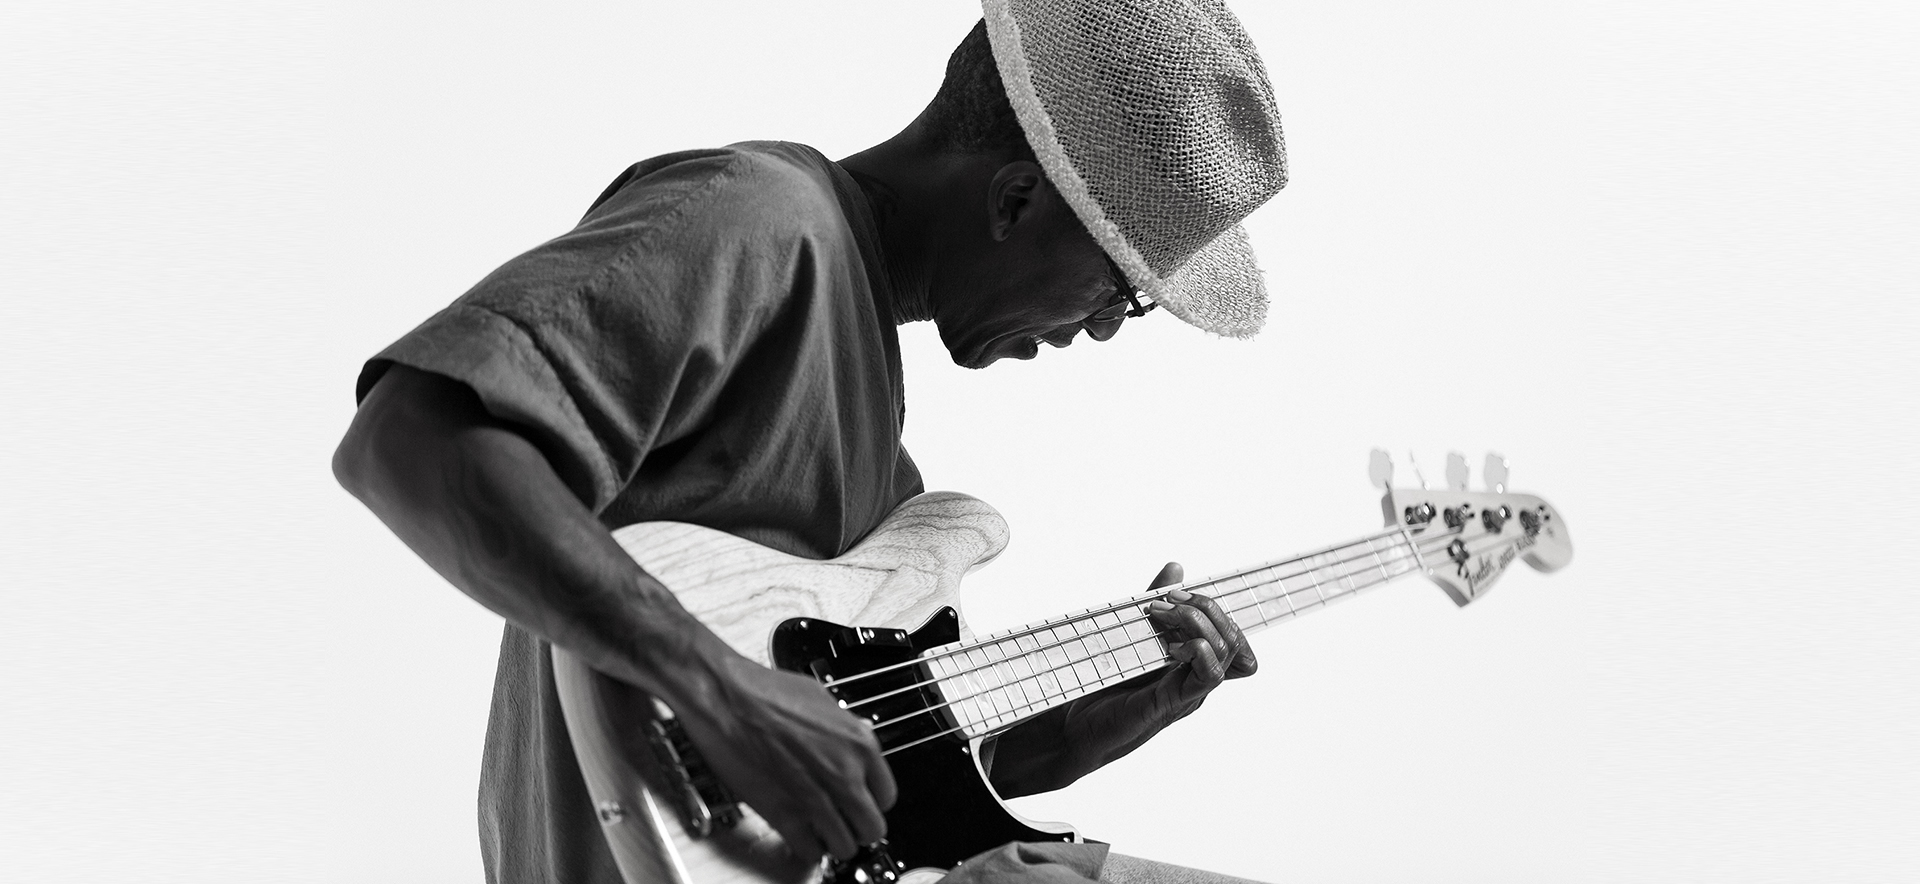 Fender artist playing a bass guitar